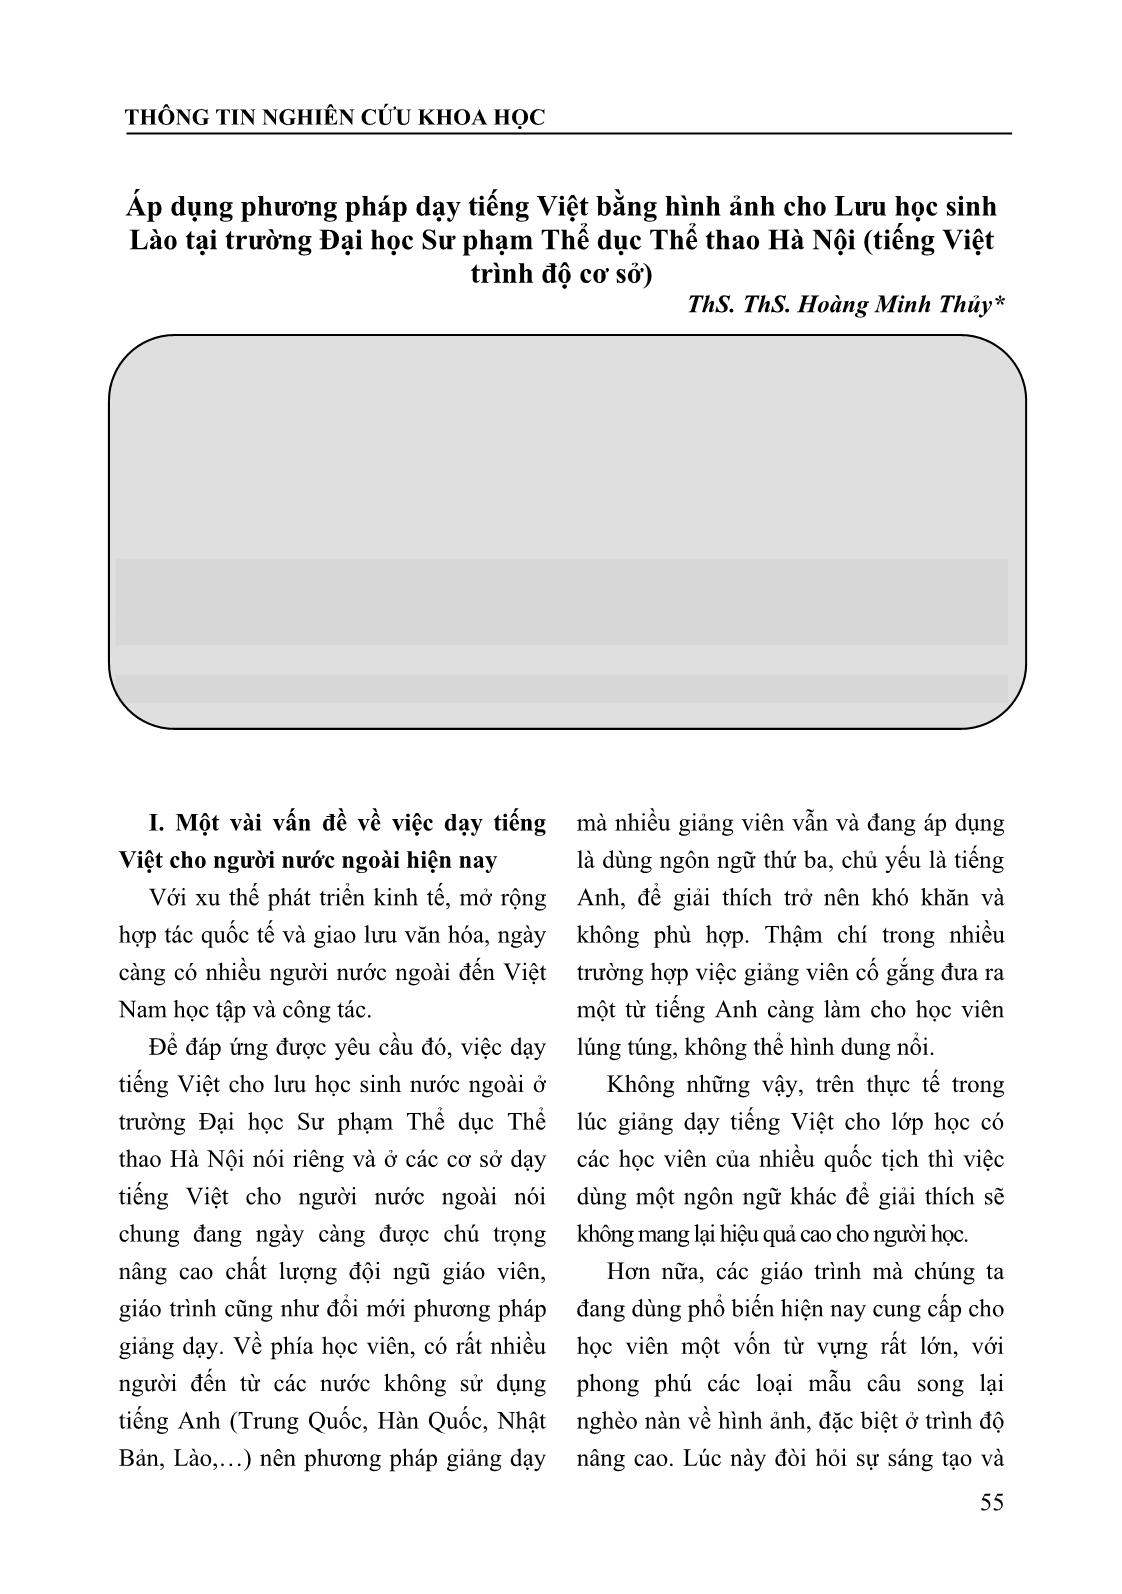 Áp dụng phương pháp dạy tiếng Việt bằng hình ảnh cho Lưu học sinh Lào tại trường Đại học Sư phạm Thể dục Thể thao Hà Nội (tiếng Việt trình độ cơ sở) trang 1